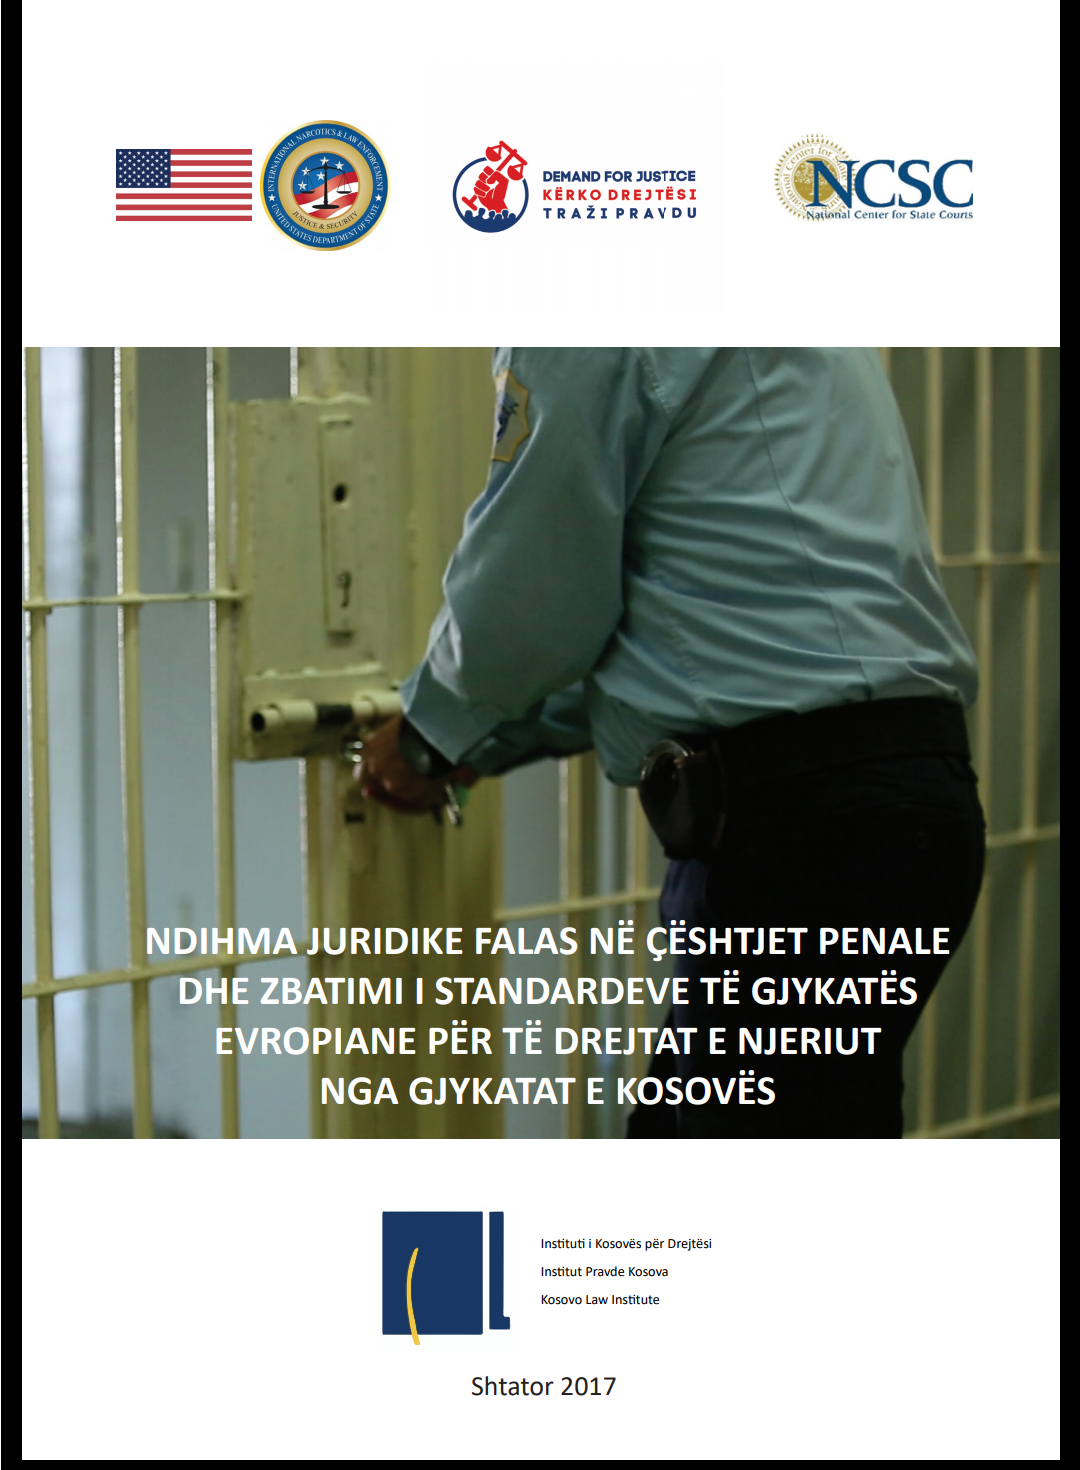 Ndihma Juridike Falas në çështjet penale dhe zbatimi i standardeve të Gjykatës Evropiane për të Drejtat e Njeriut nga Gjykatat e Kosovës